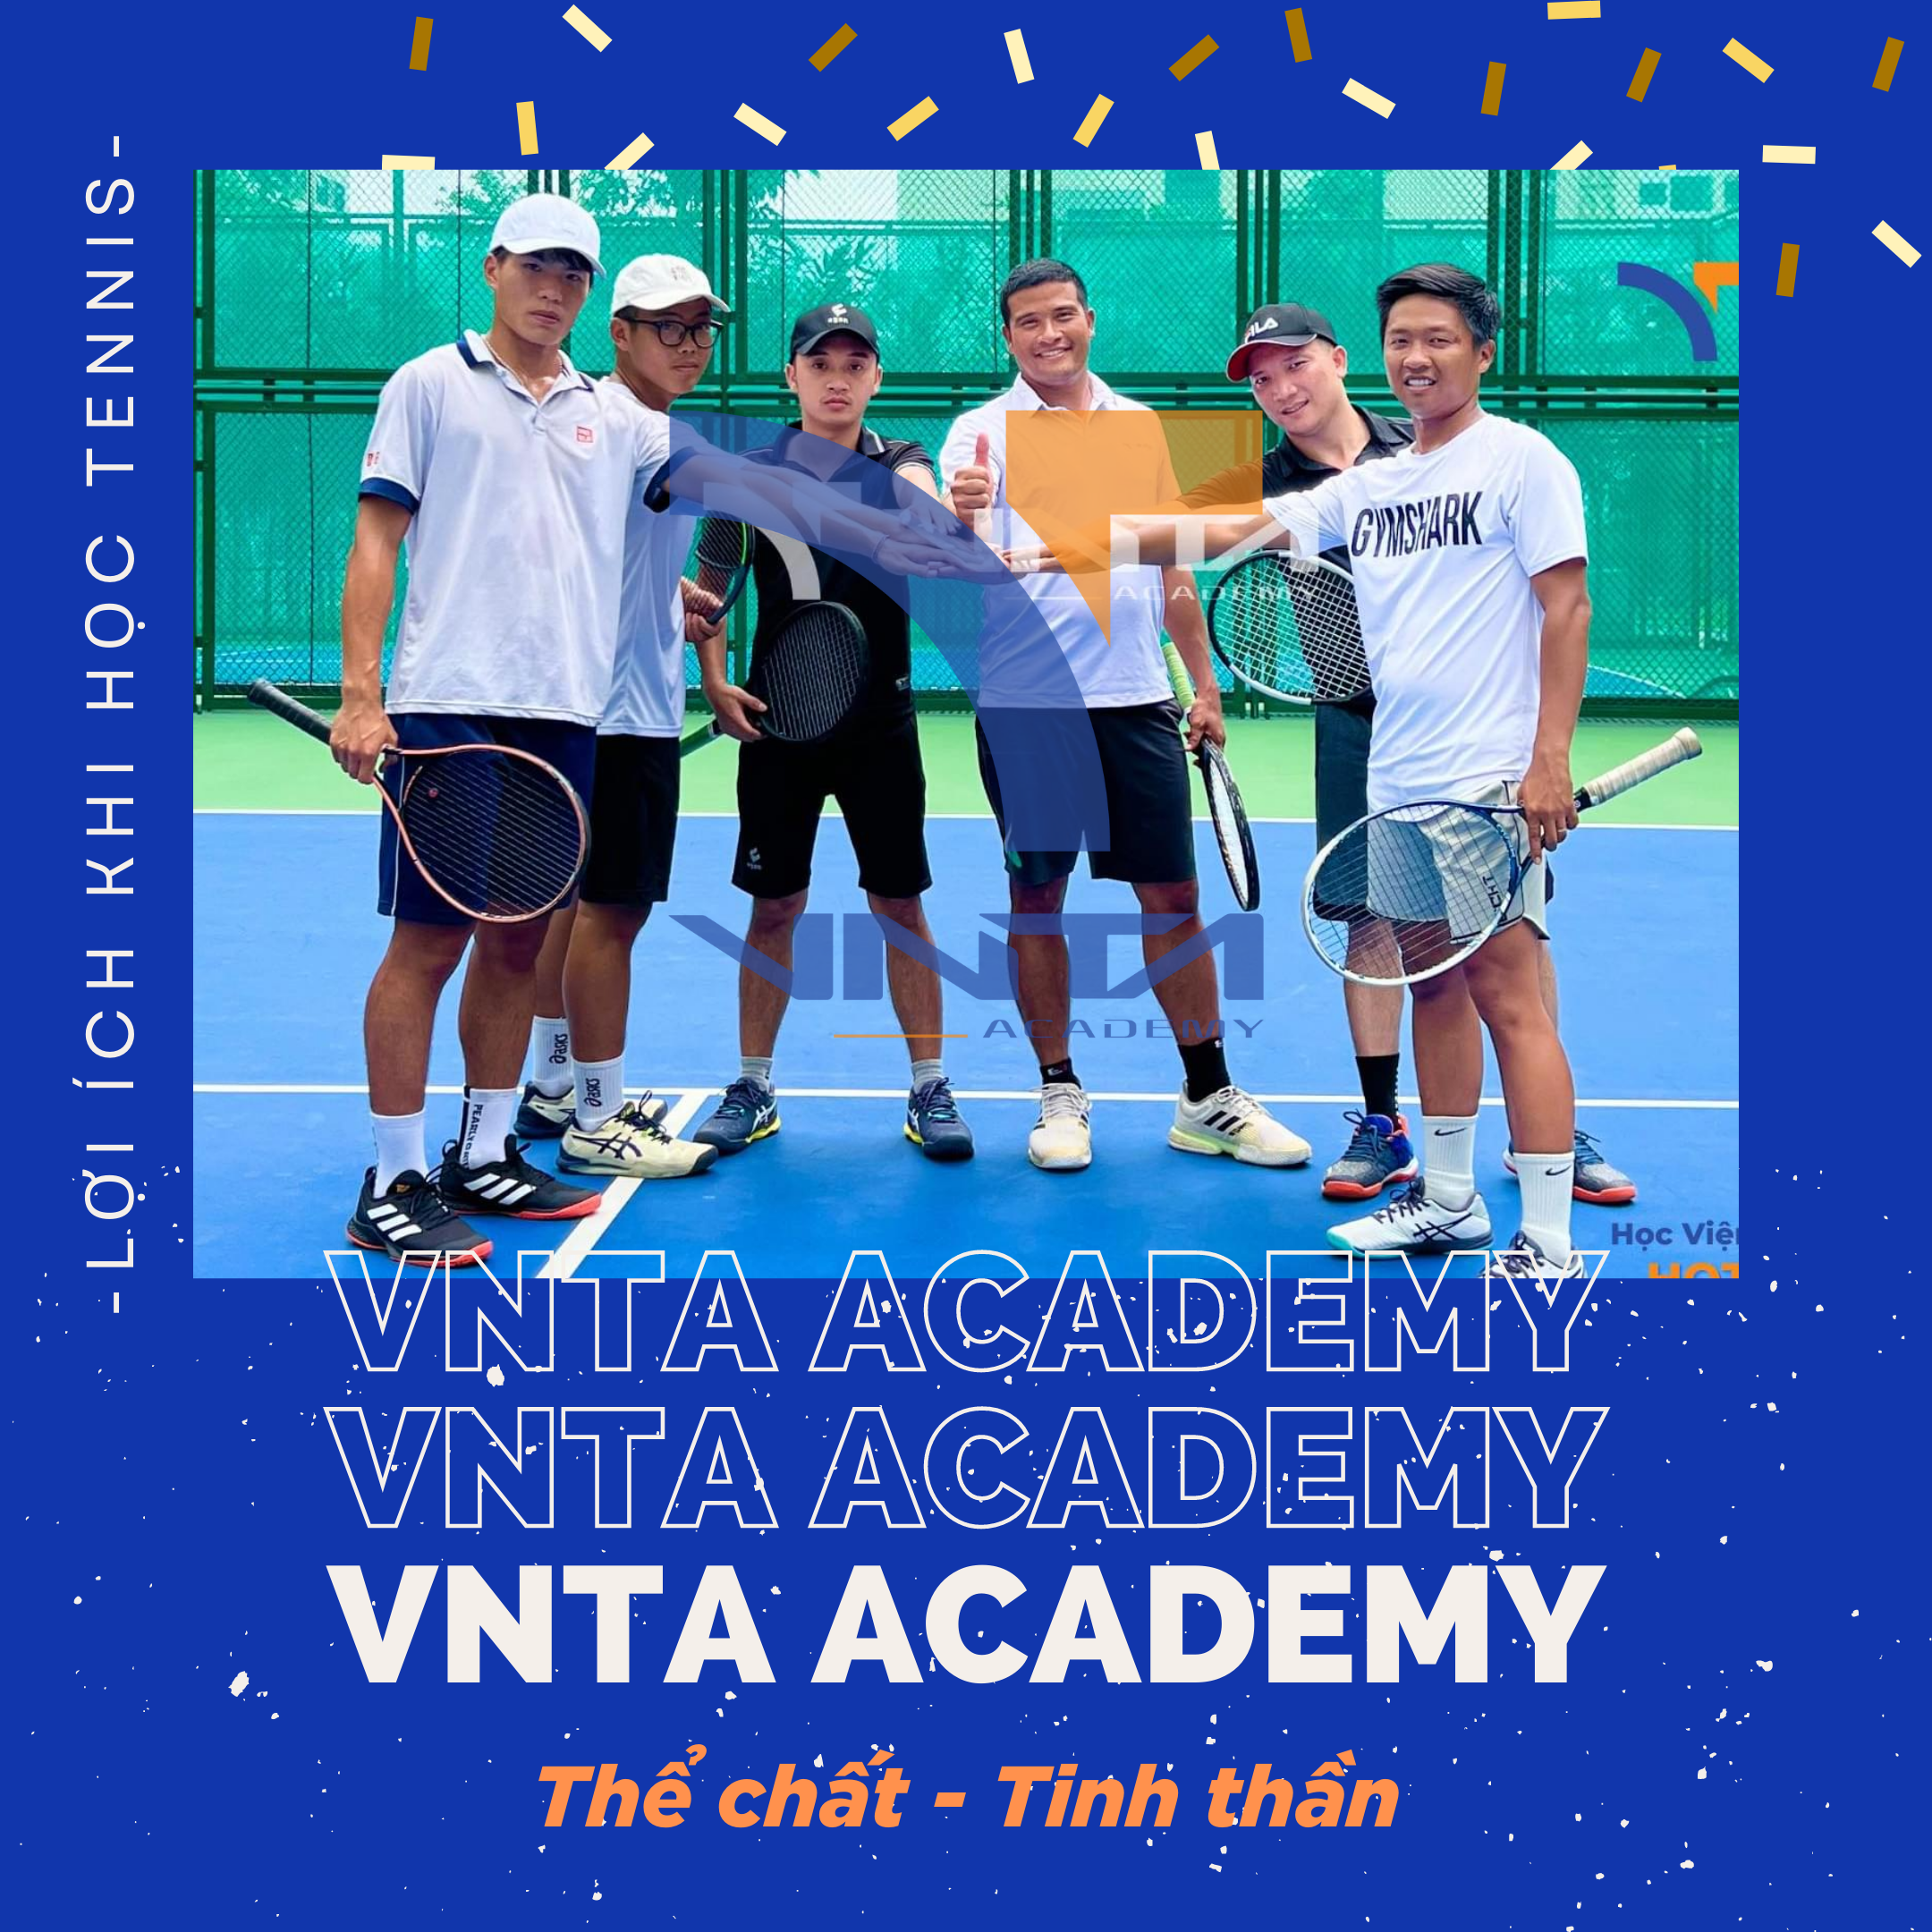 VNTA Academy - Học viện Tennis lớn nhất tại Hà Nội và TPHCM